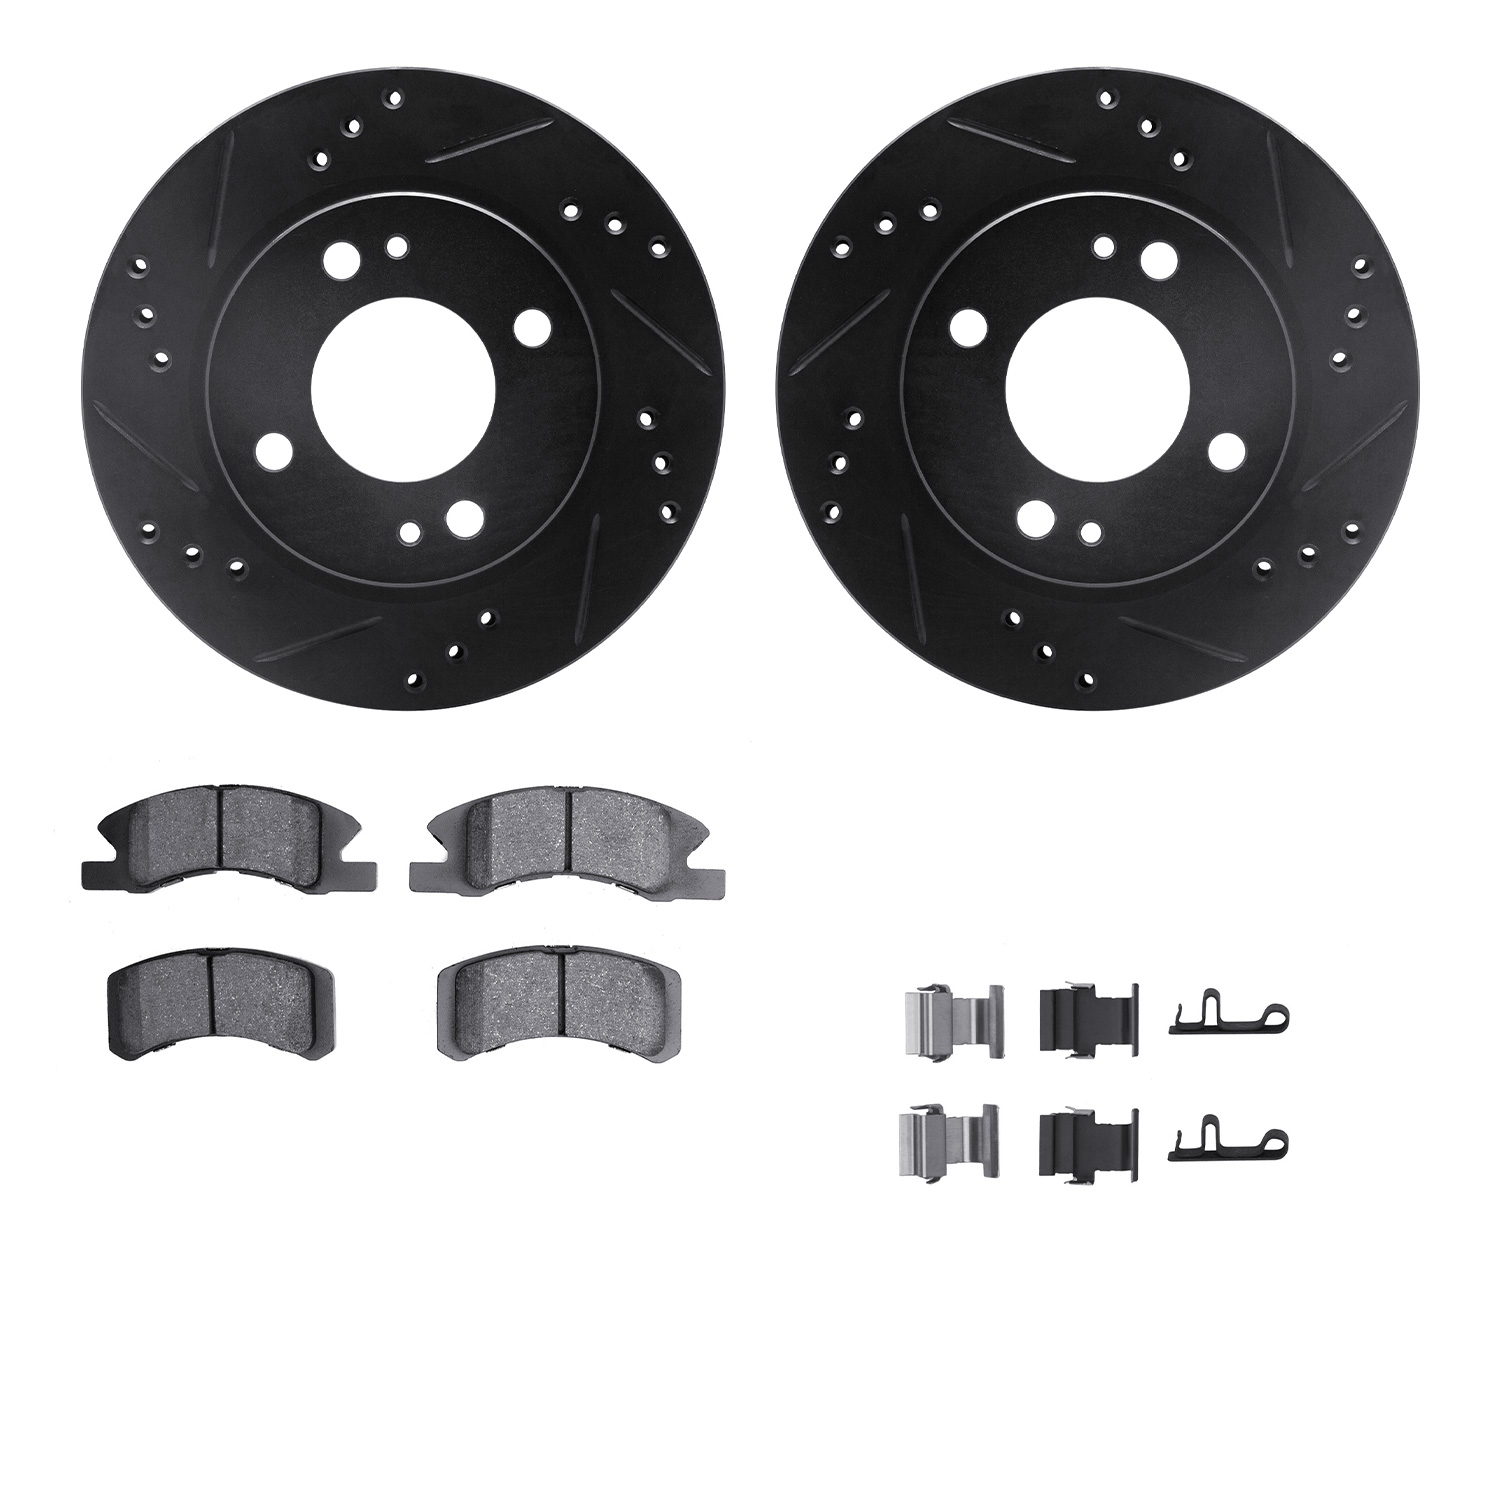 8312-72088 Drilled/Slotted Brake Rotors with 3000-Series Ceramic Brake Pads Kit & Hardware [Black], 2014-2015 Mitsubishi, Positi